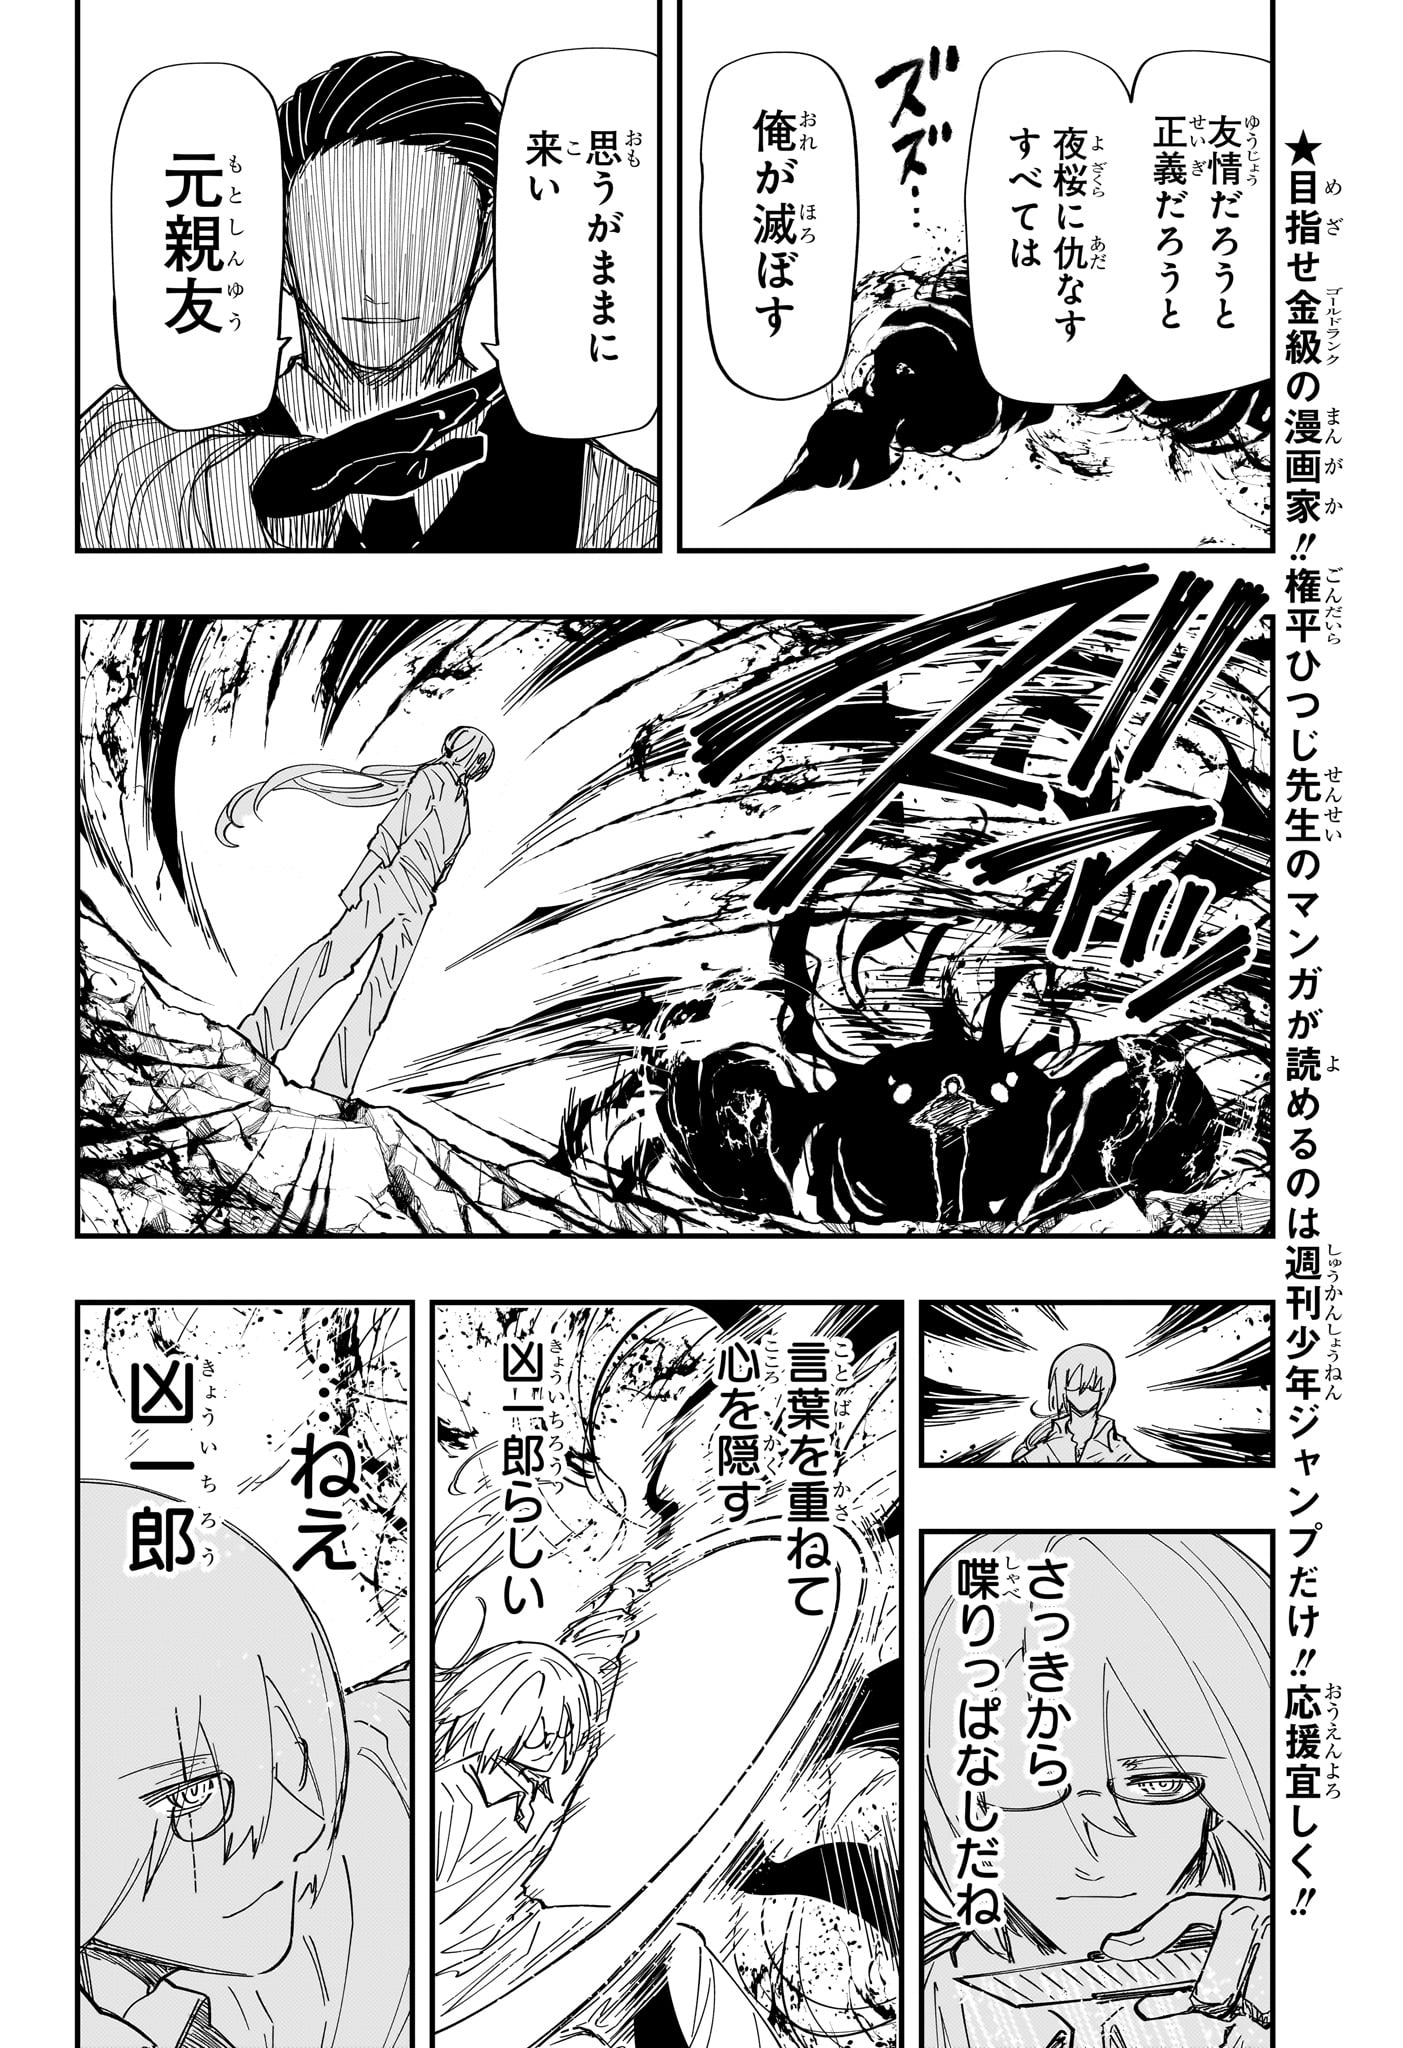 Yozakura-san Chi no Daisakusen - Chapter 228 - Page 10